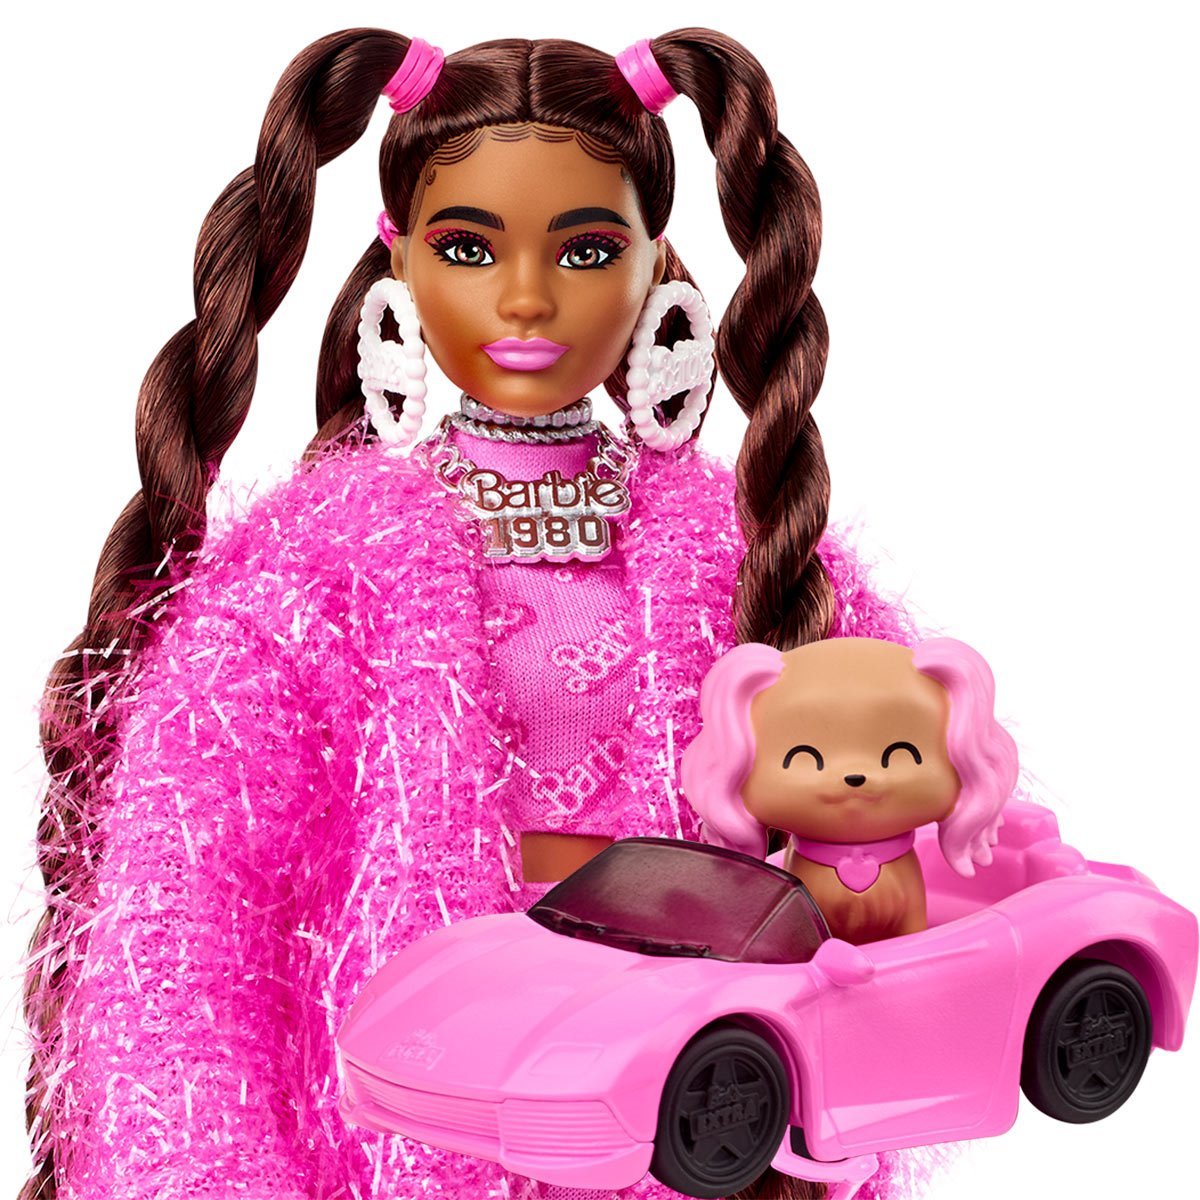 barbie-extra-doll-14-ubicaciondepersonas-cdmx-gob-mx